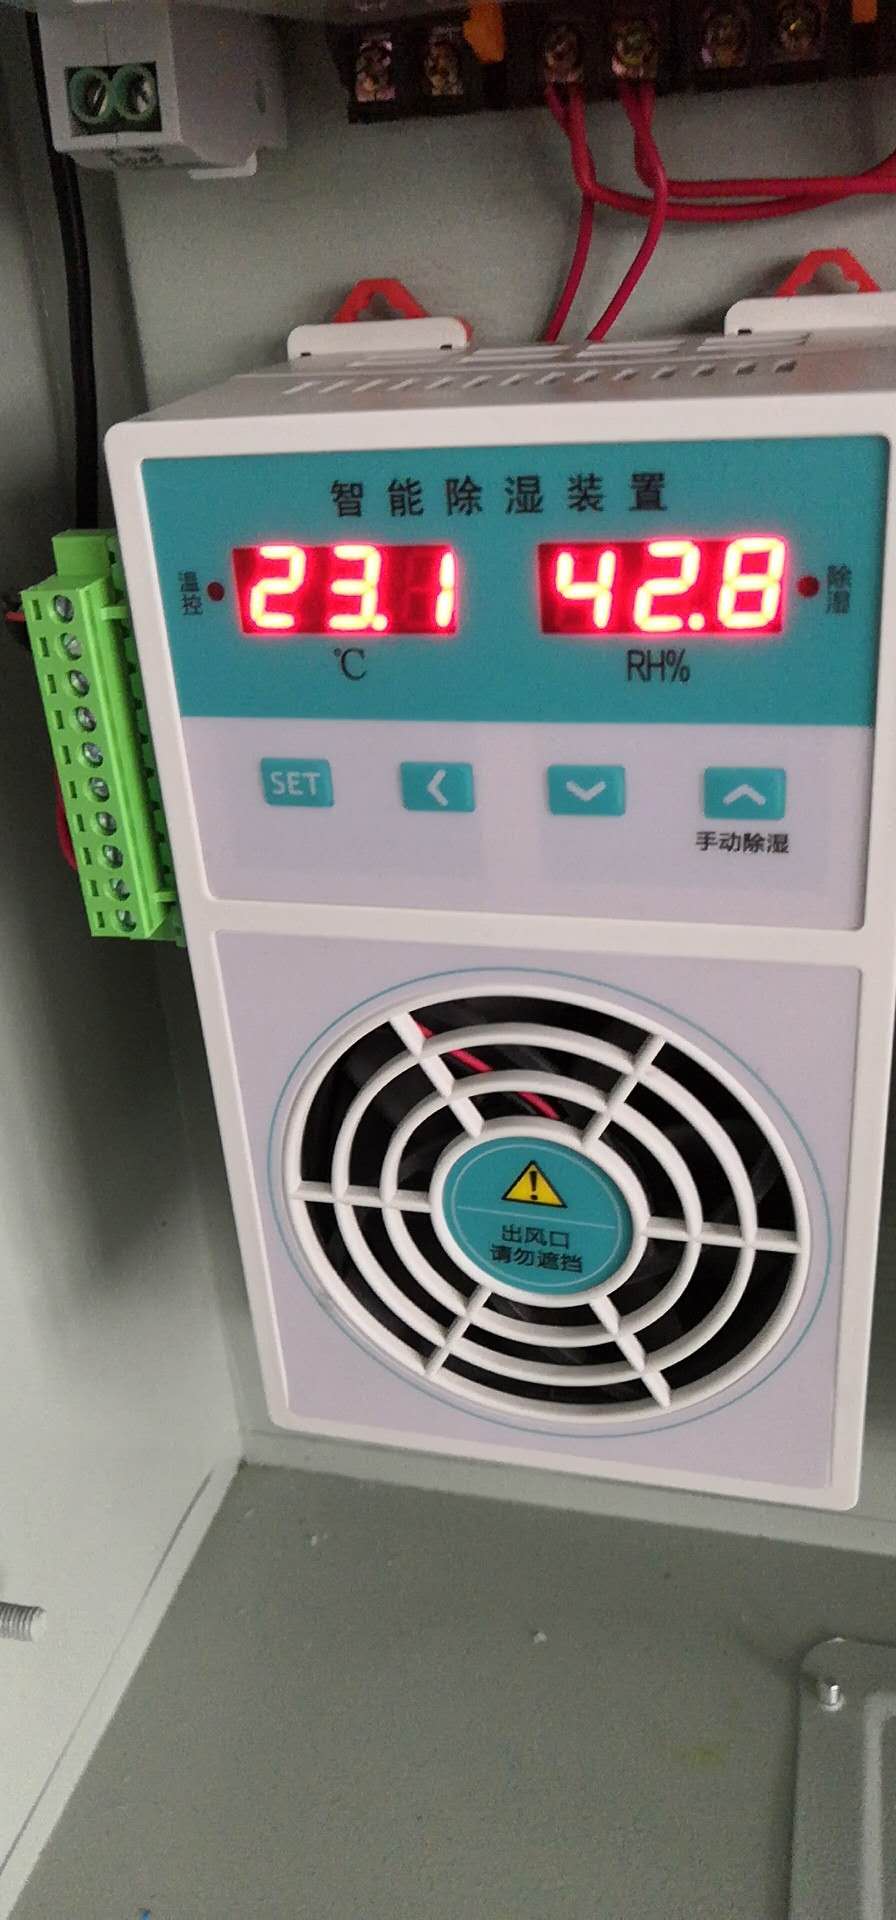 温湿度控制器BC703-A022-228